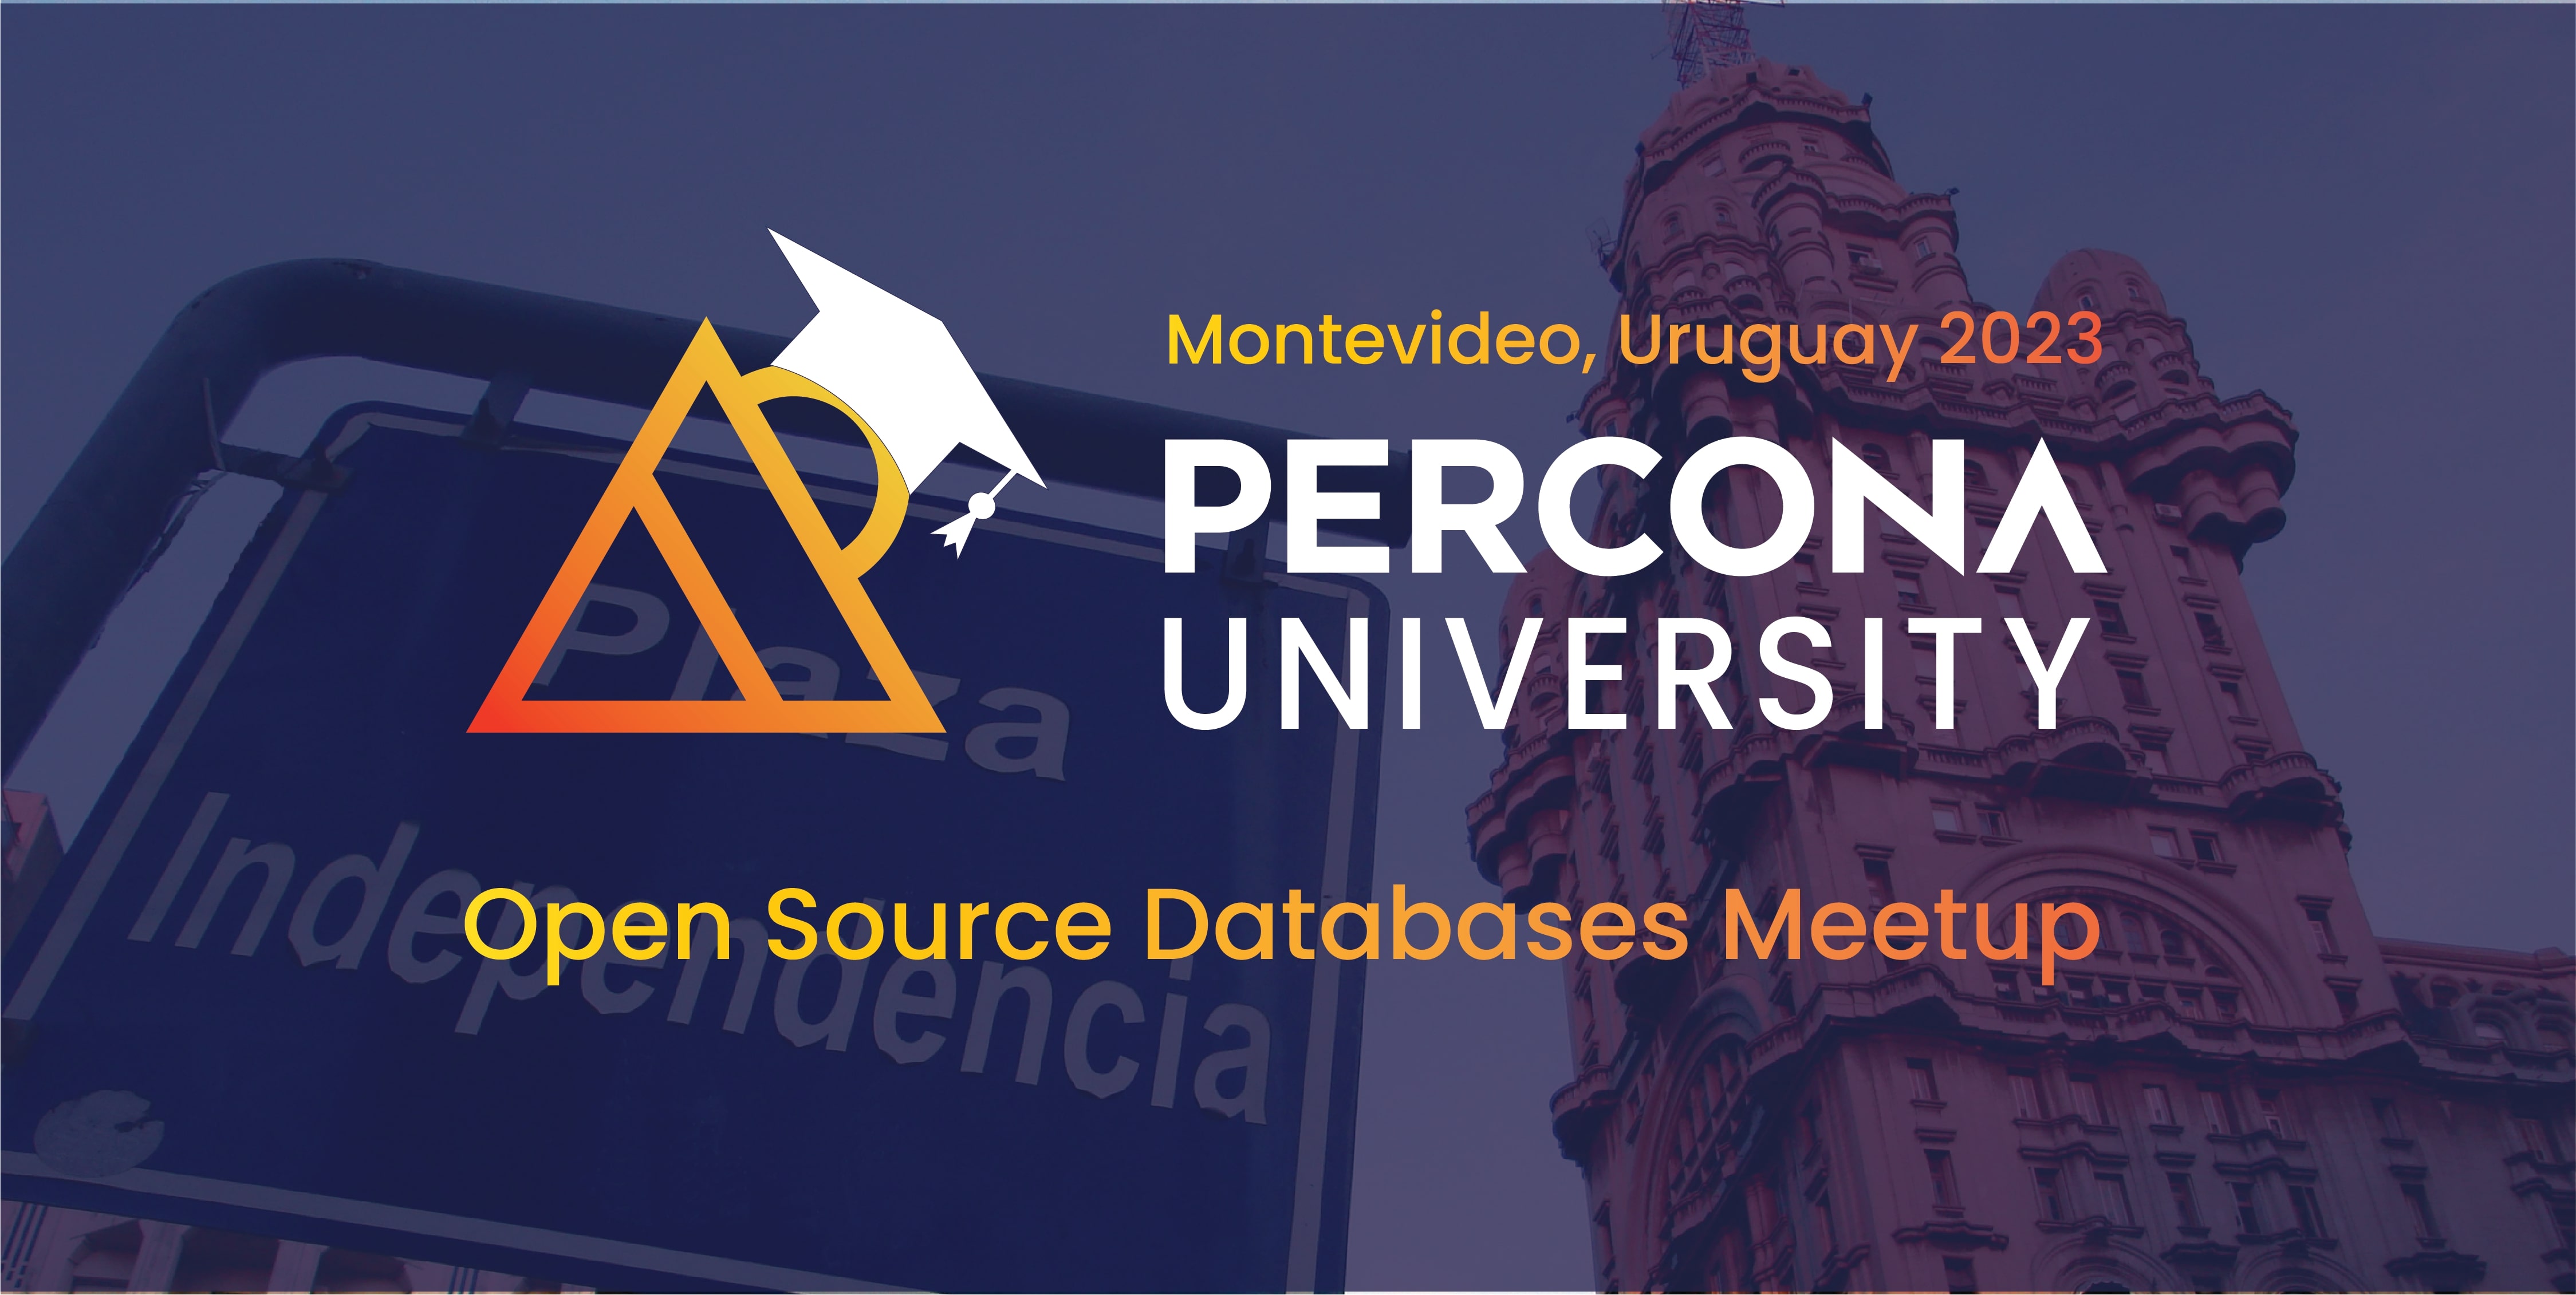 Percona University Montevideo